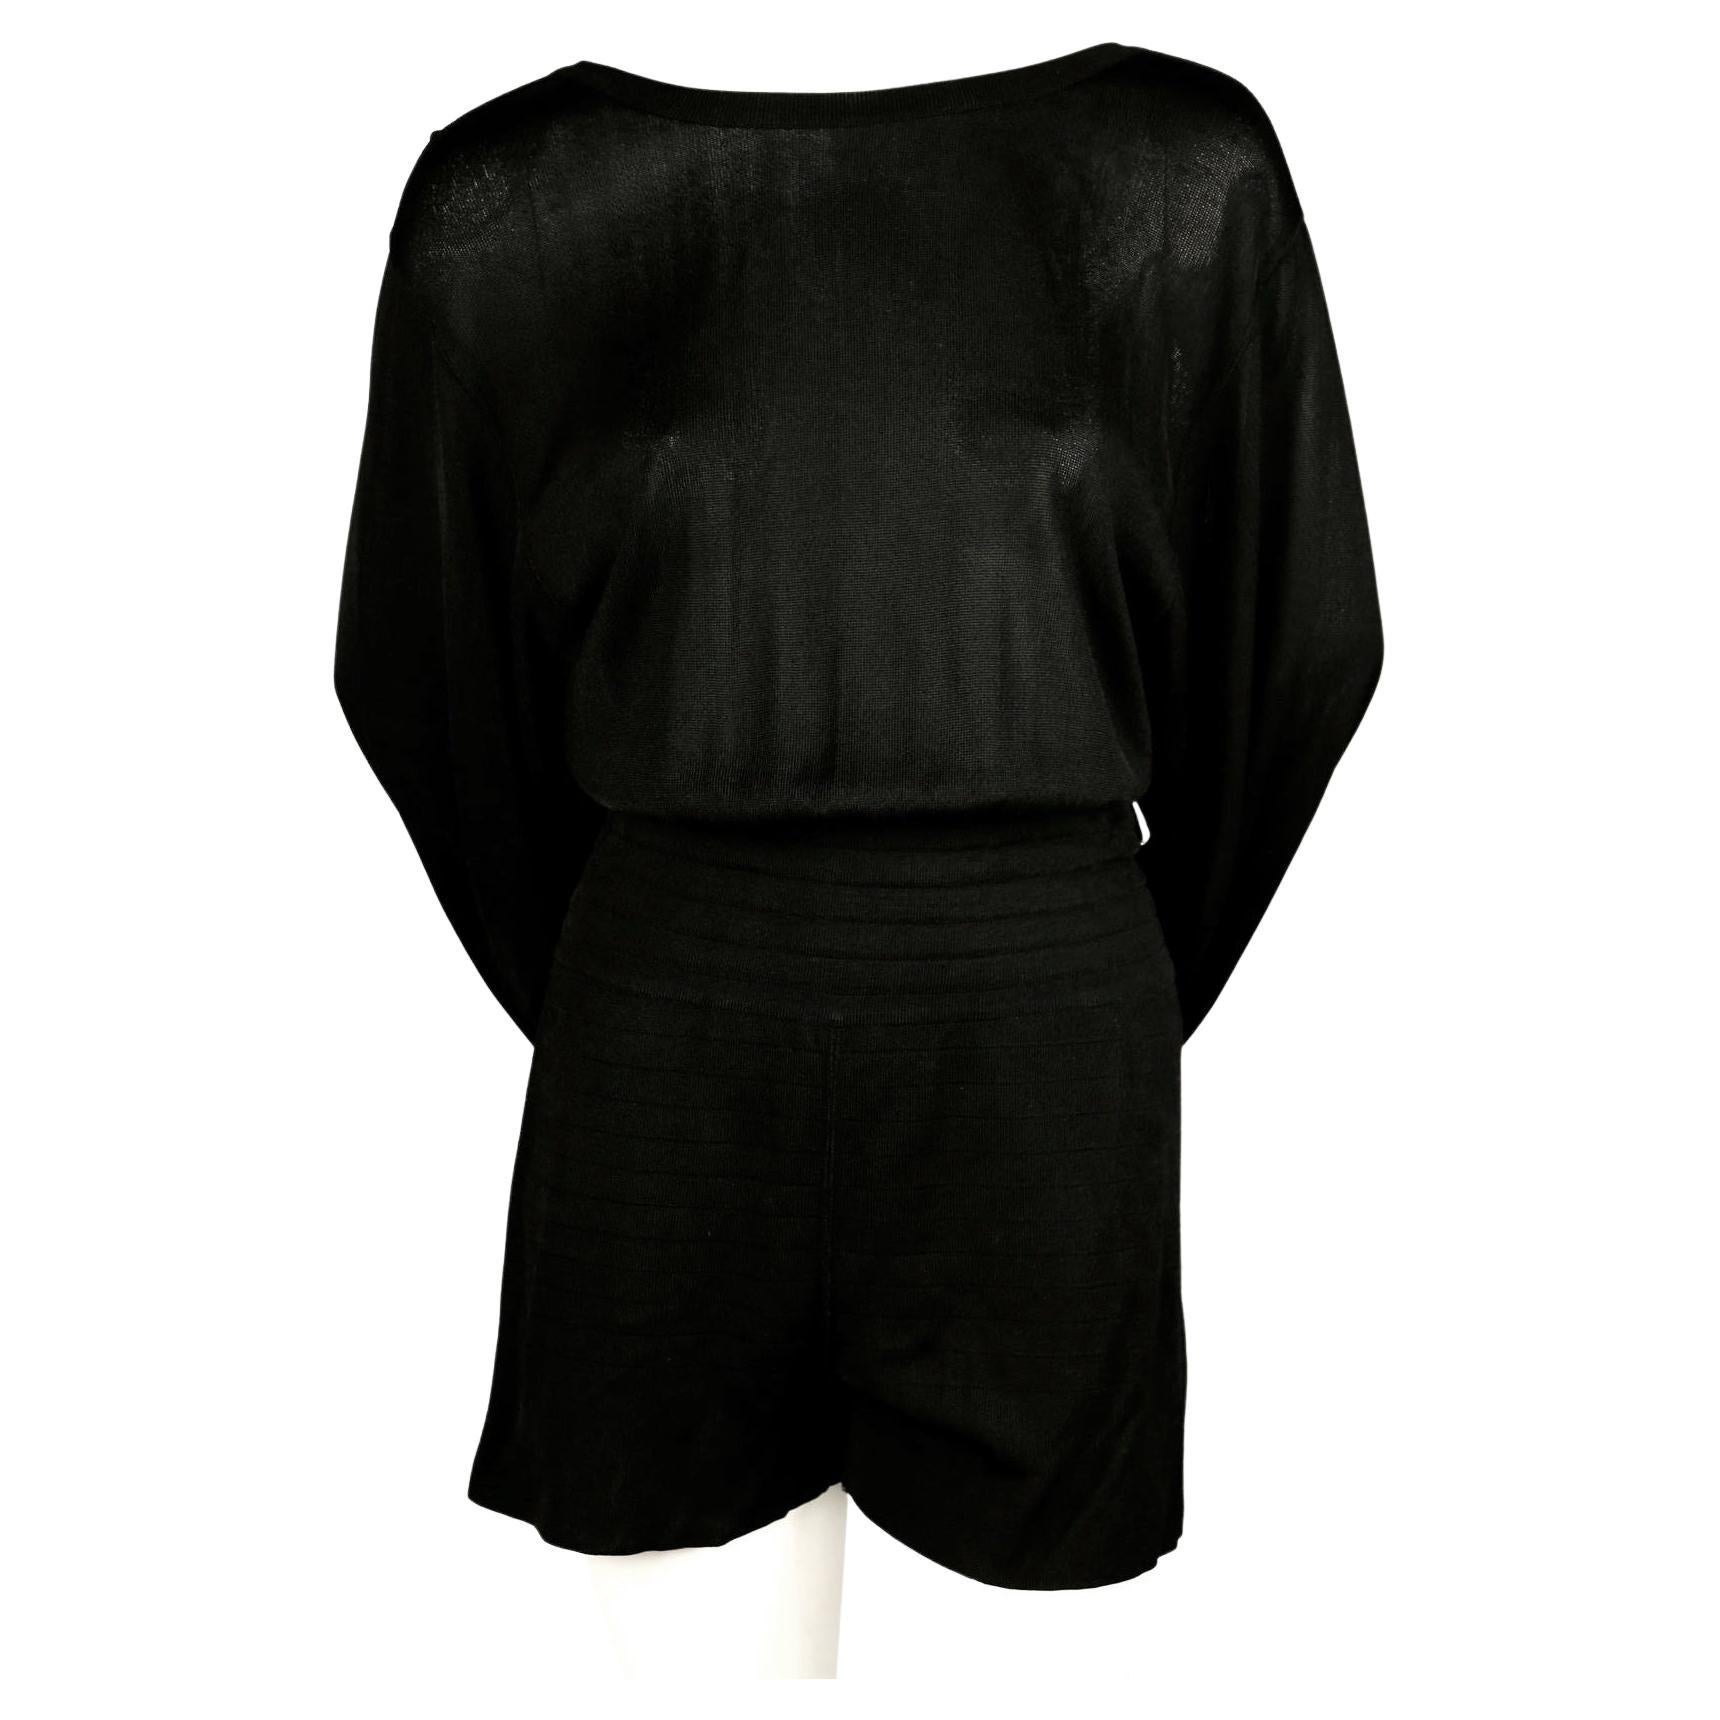 Combinaison d'été noir de jais avec jupe assortie qui s'accroche astucieusement à la ceinture pour créer une silhouette drapée unique, conçue par Azzedine Alaia à la fin des années 1980. Il se porte aussi bien le jour que la nuit. Ce serait une